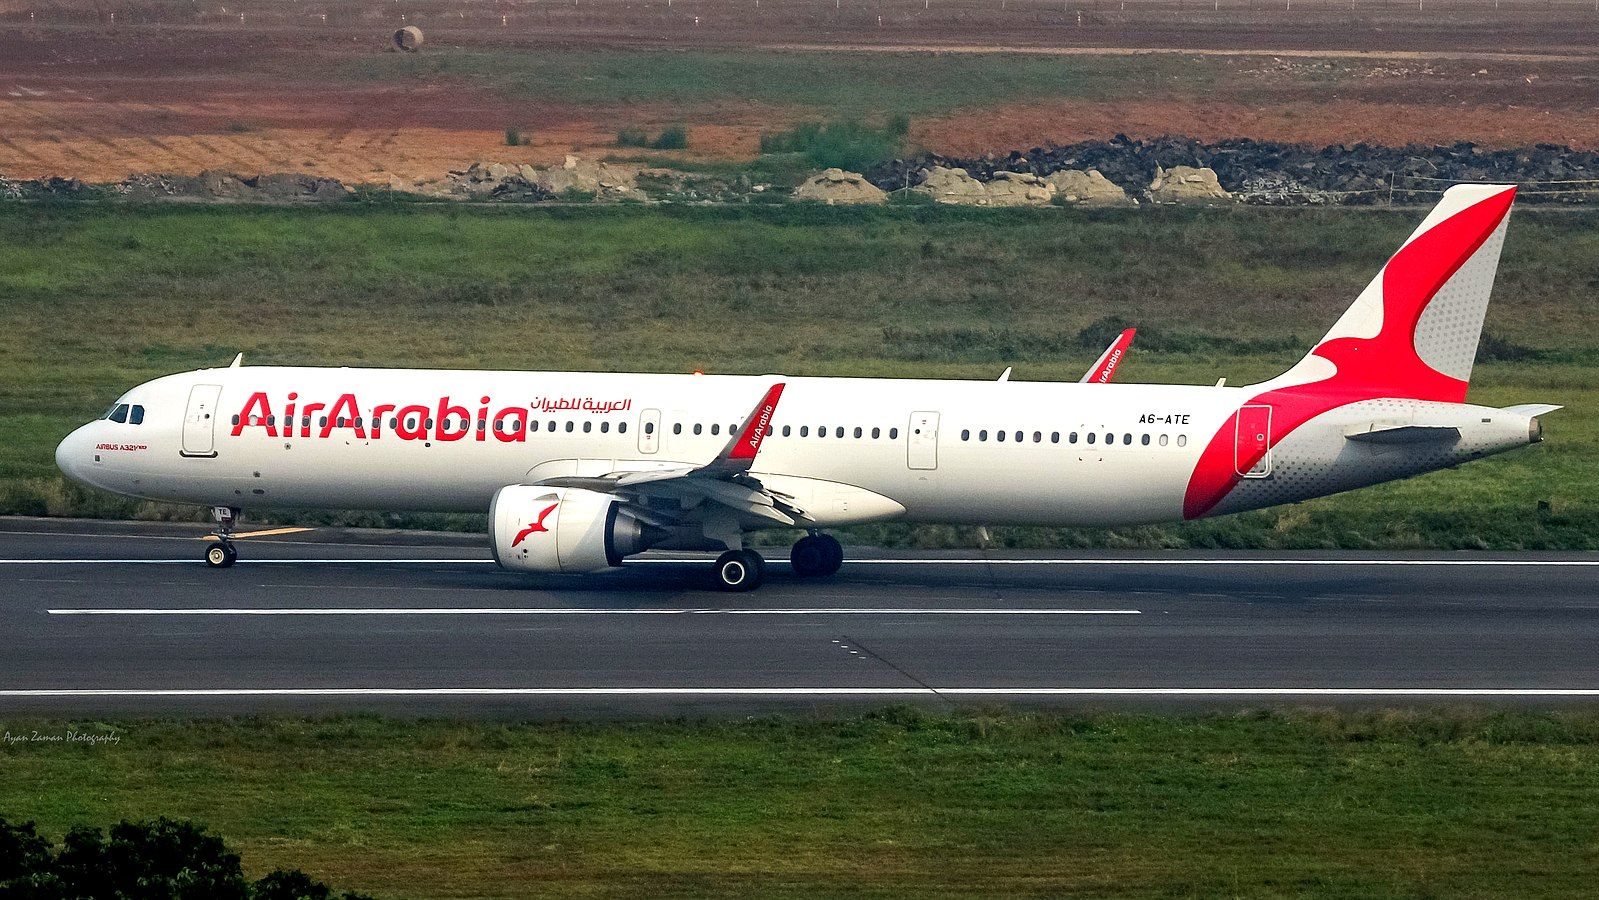 A6-ATE_-_Air_Arabia_-_Airbus_A321-251NX_-_MSN_9265_-_VGHS